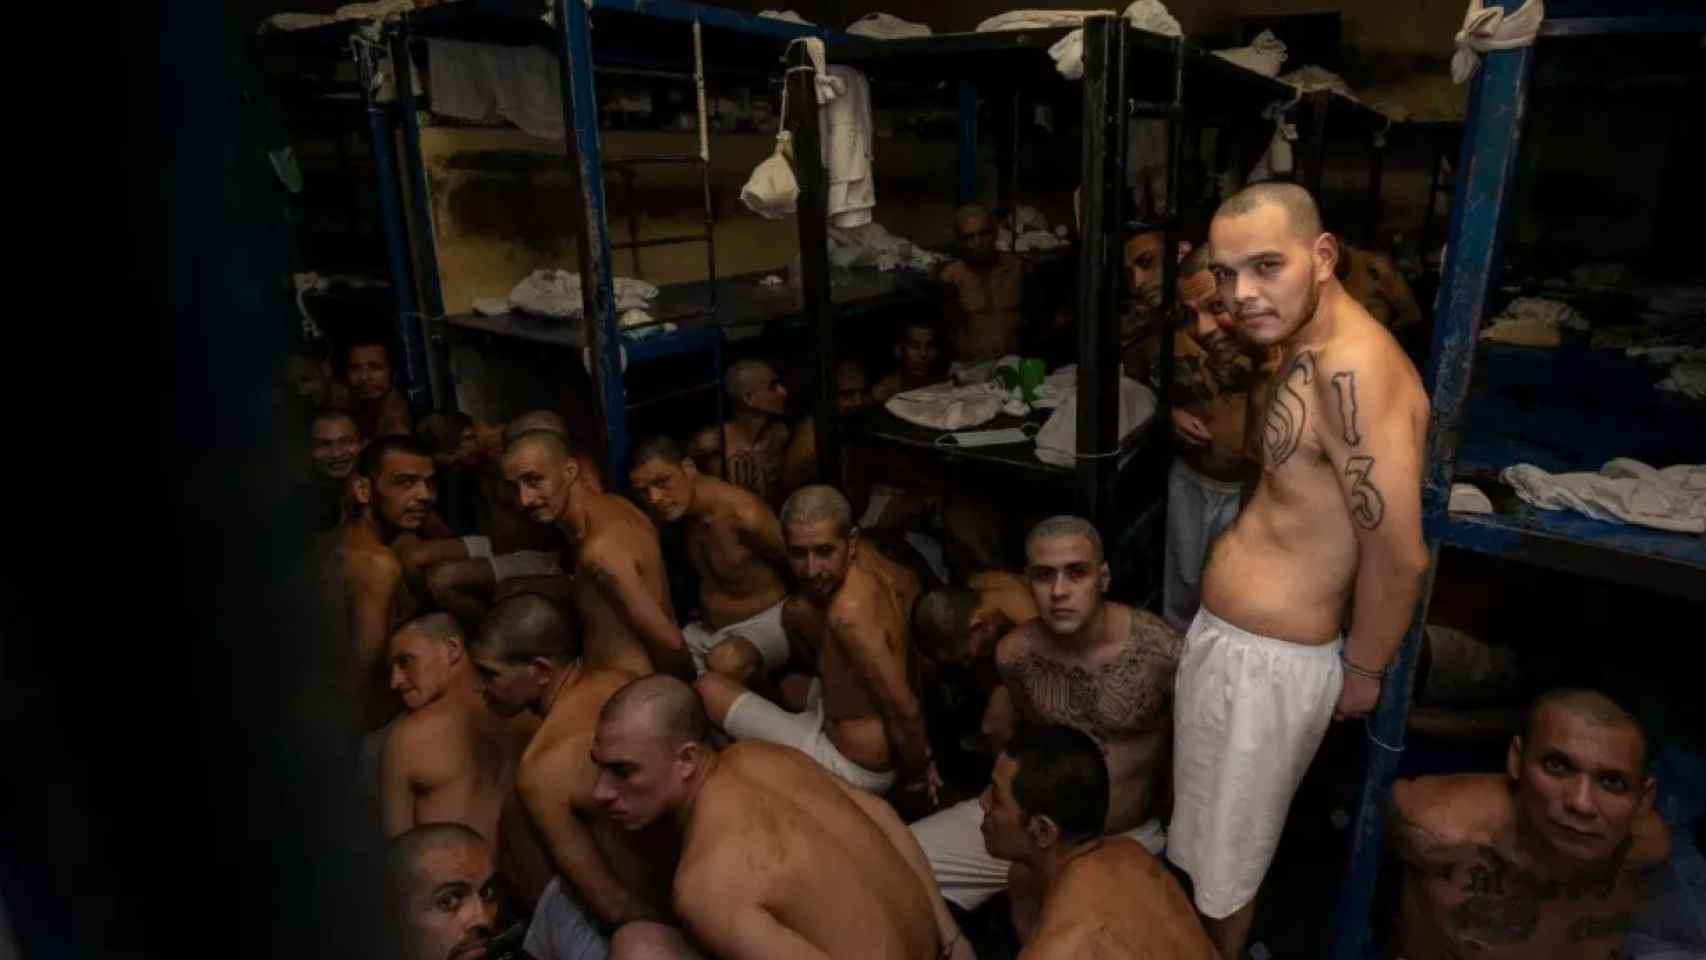 La 'bukelización' atraviesa América Latina: así está influyendo su modelo en las prisiones de Honduras, Ecuador...